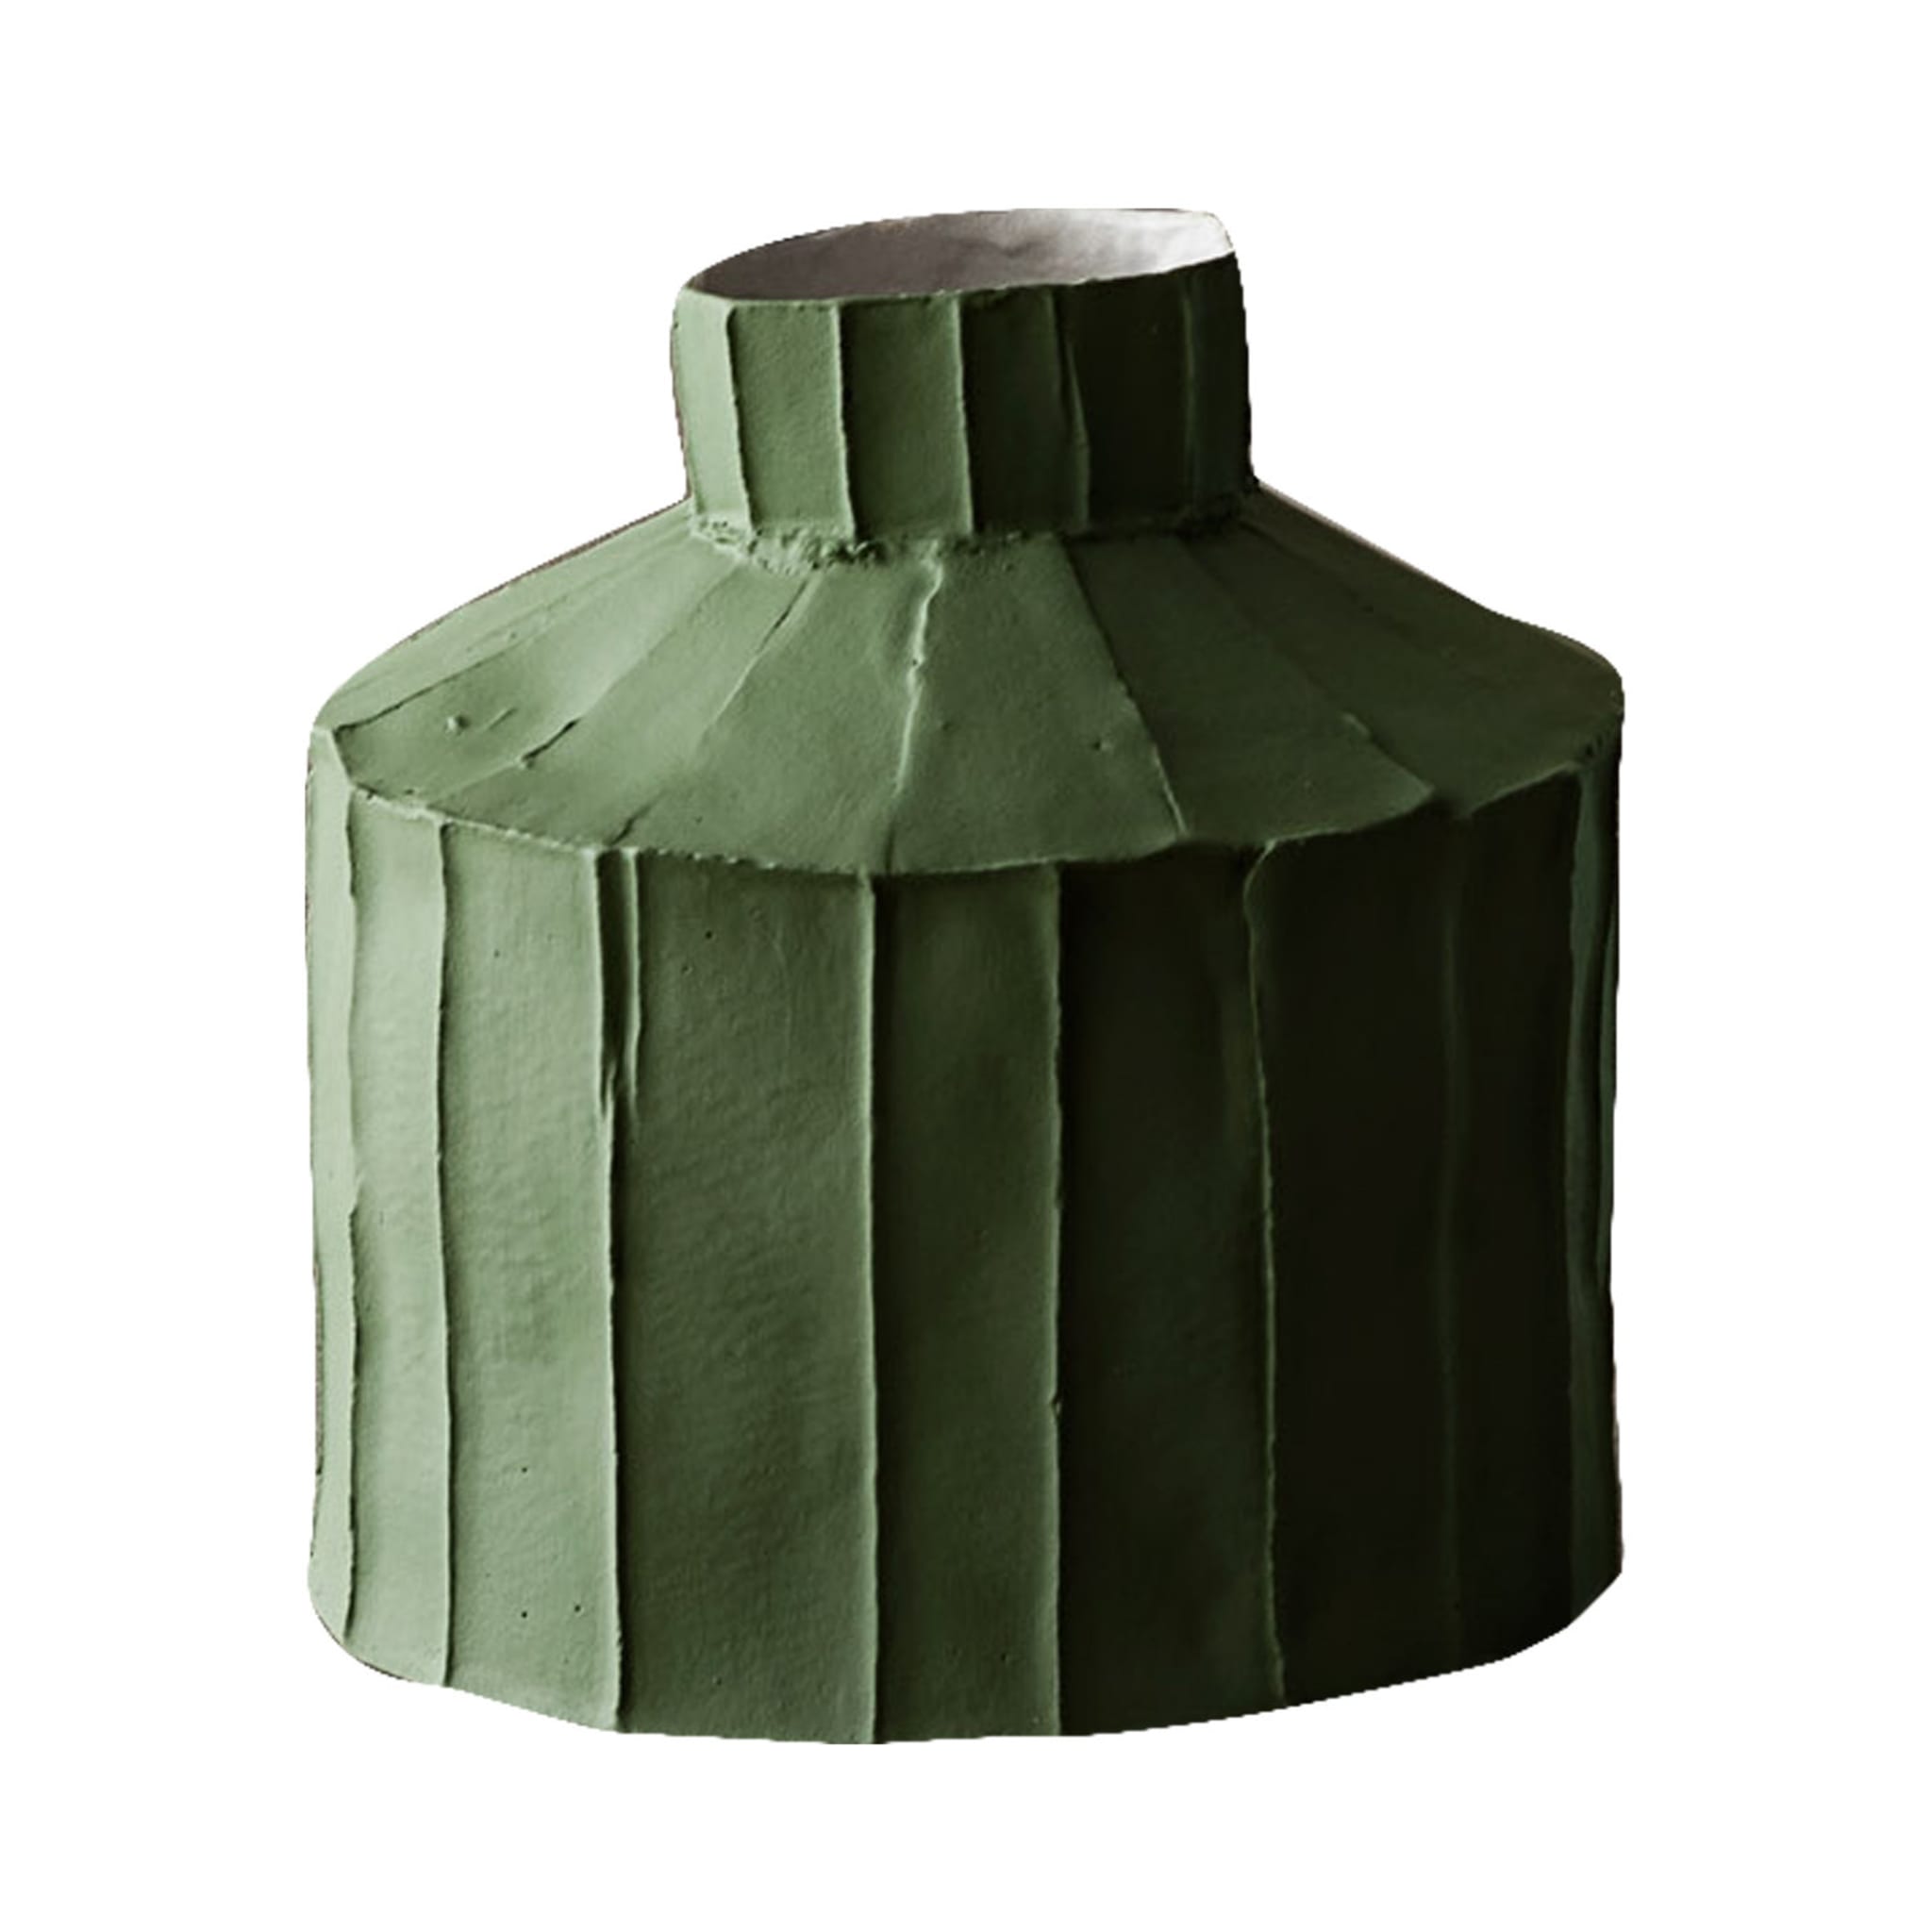 Cartocci Corteccia Fide Moss Green Vase - Main view